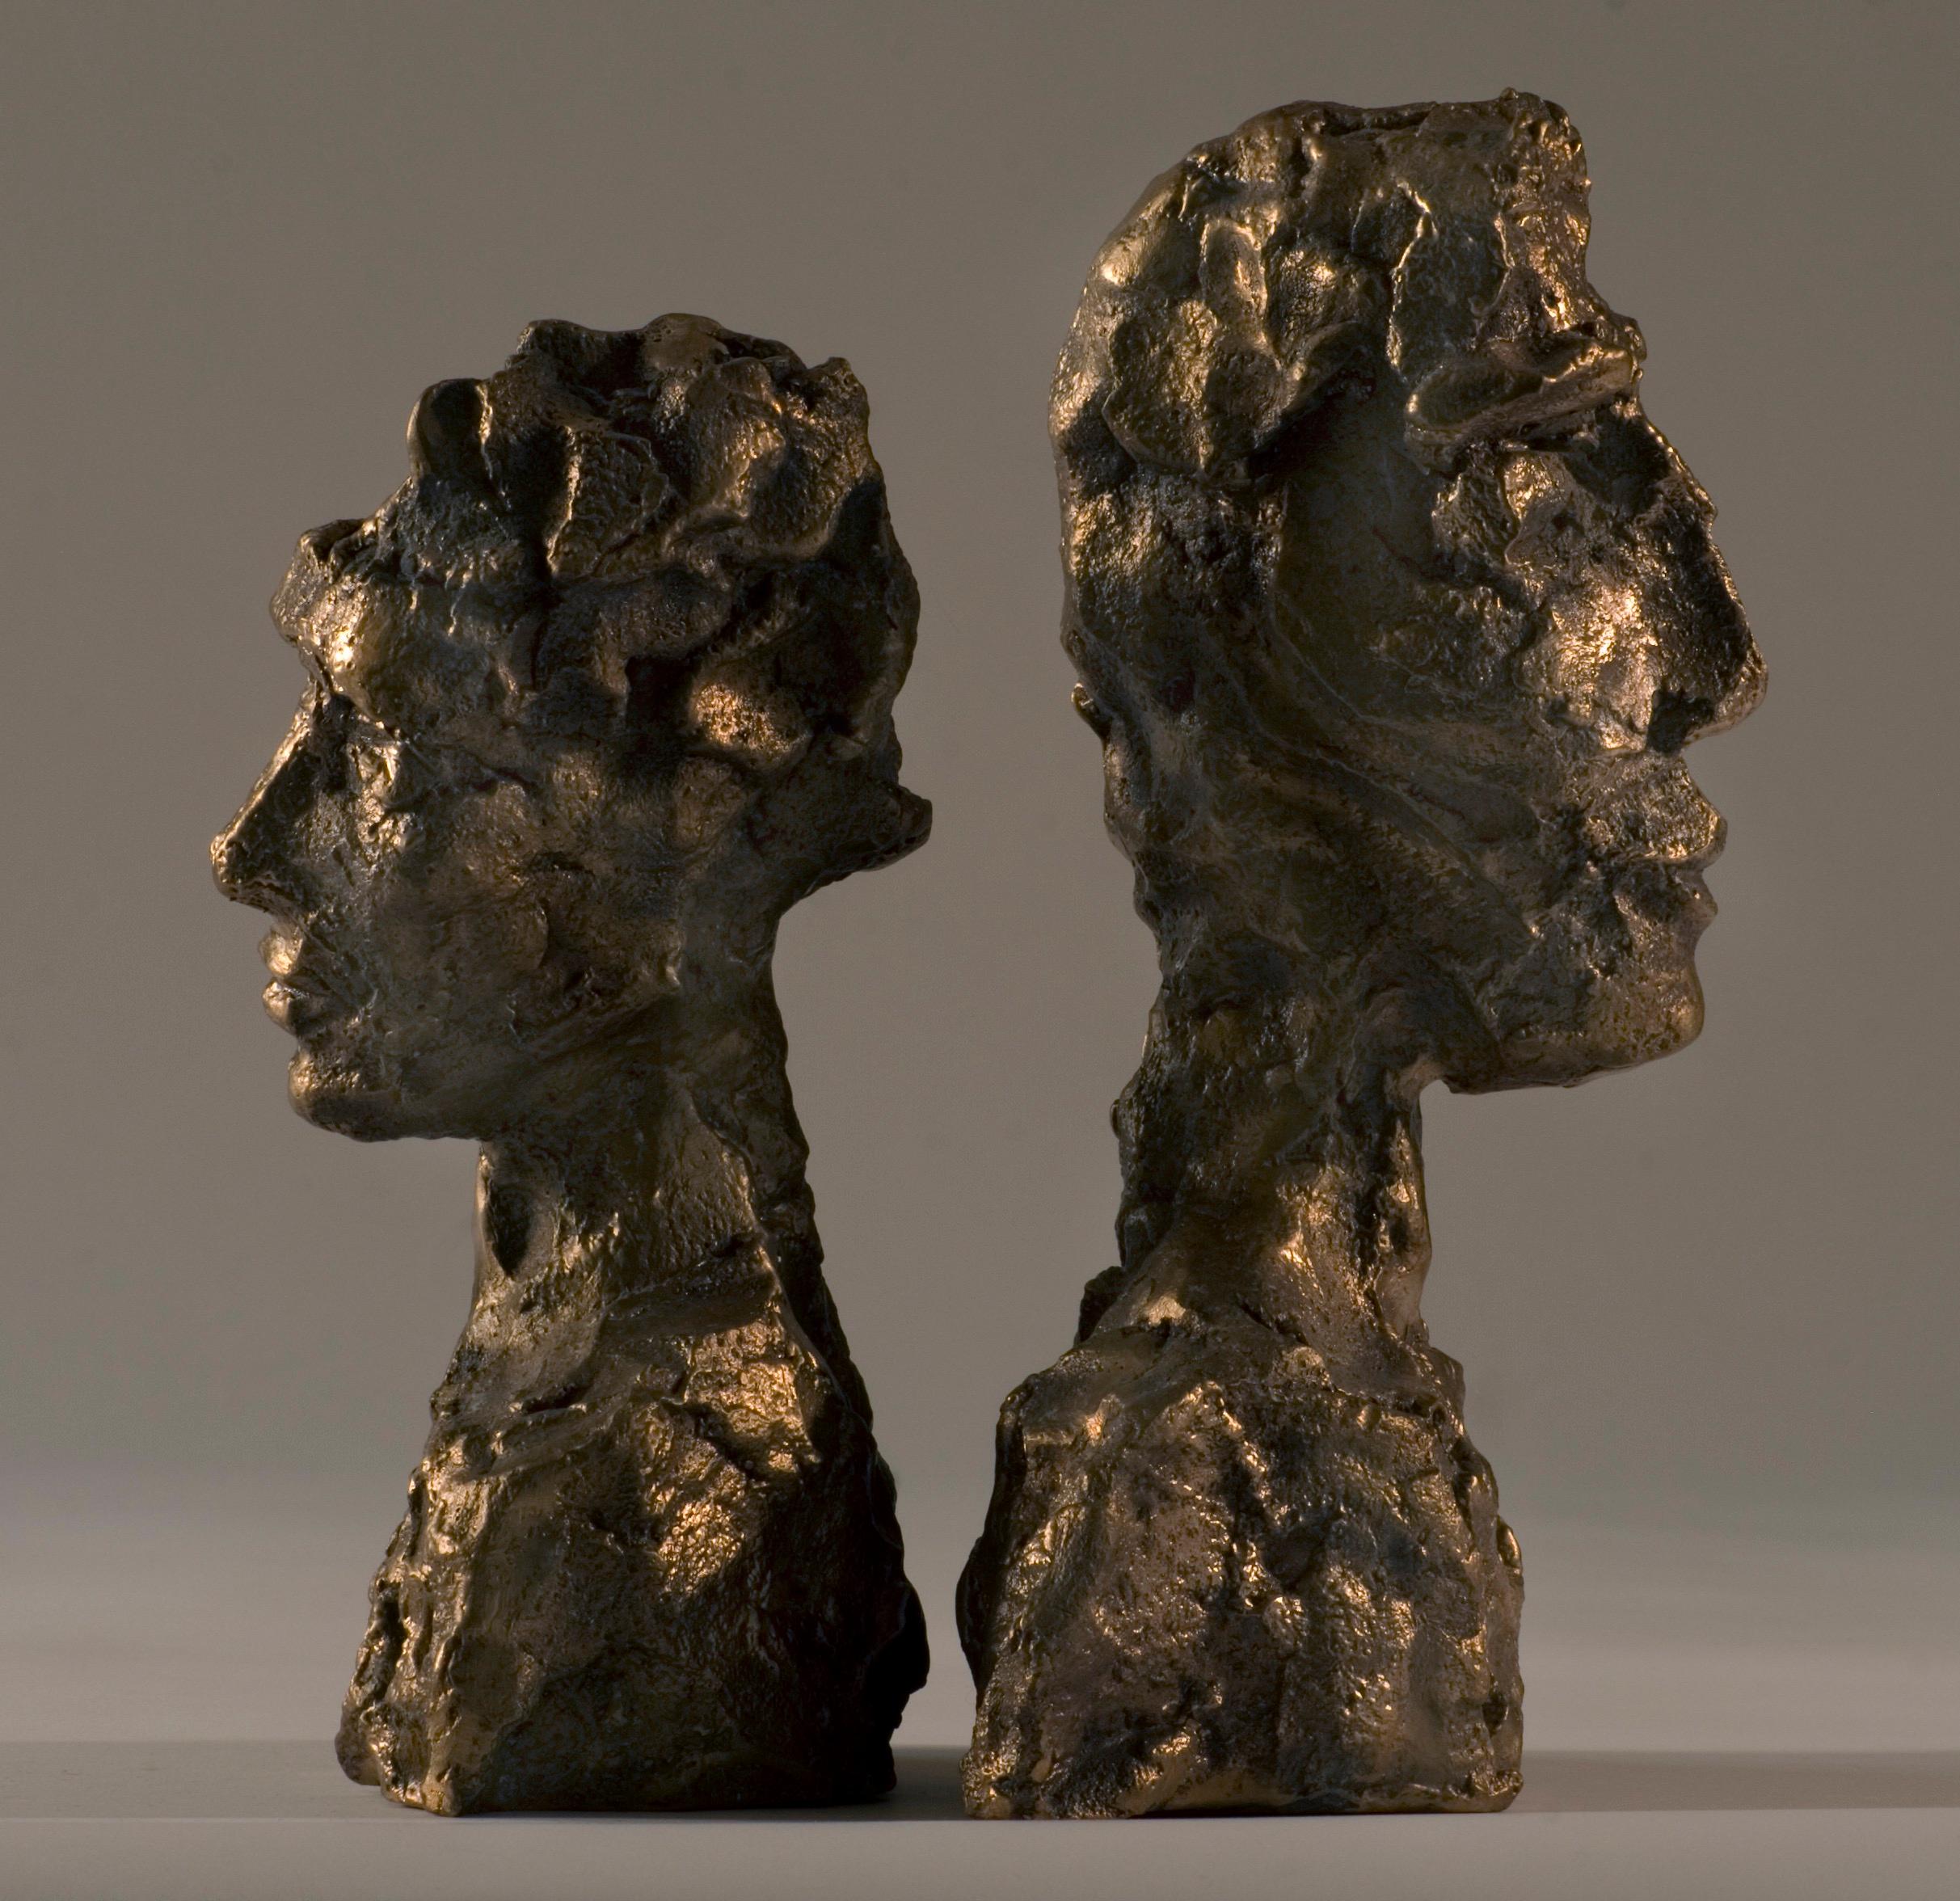 Modern 21st Century Raw Bronze Contemporary Sculpture, 'Emotion' by Margit Wittig For Sale